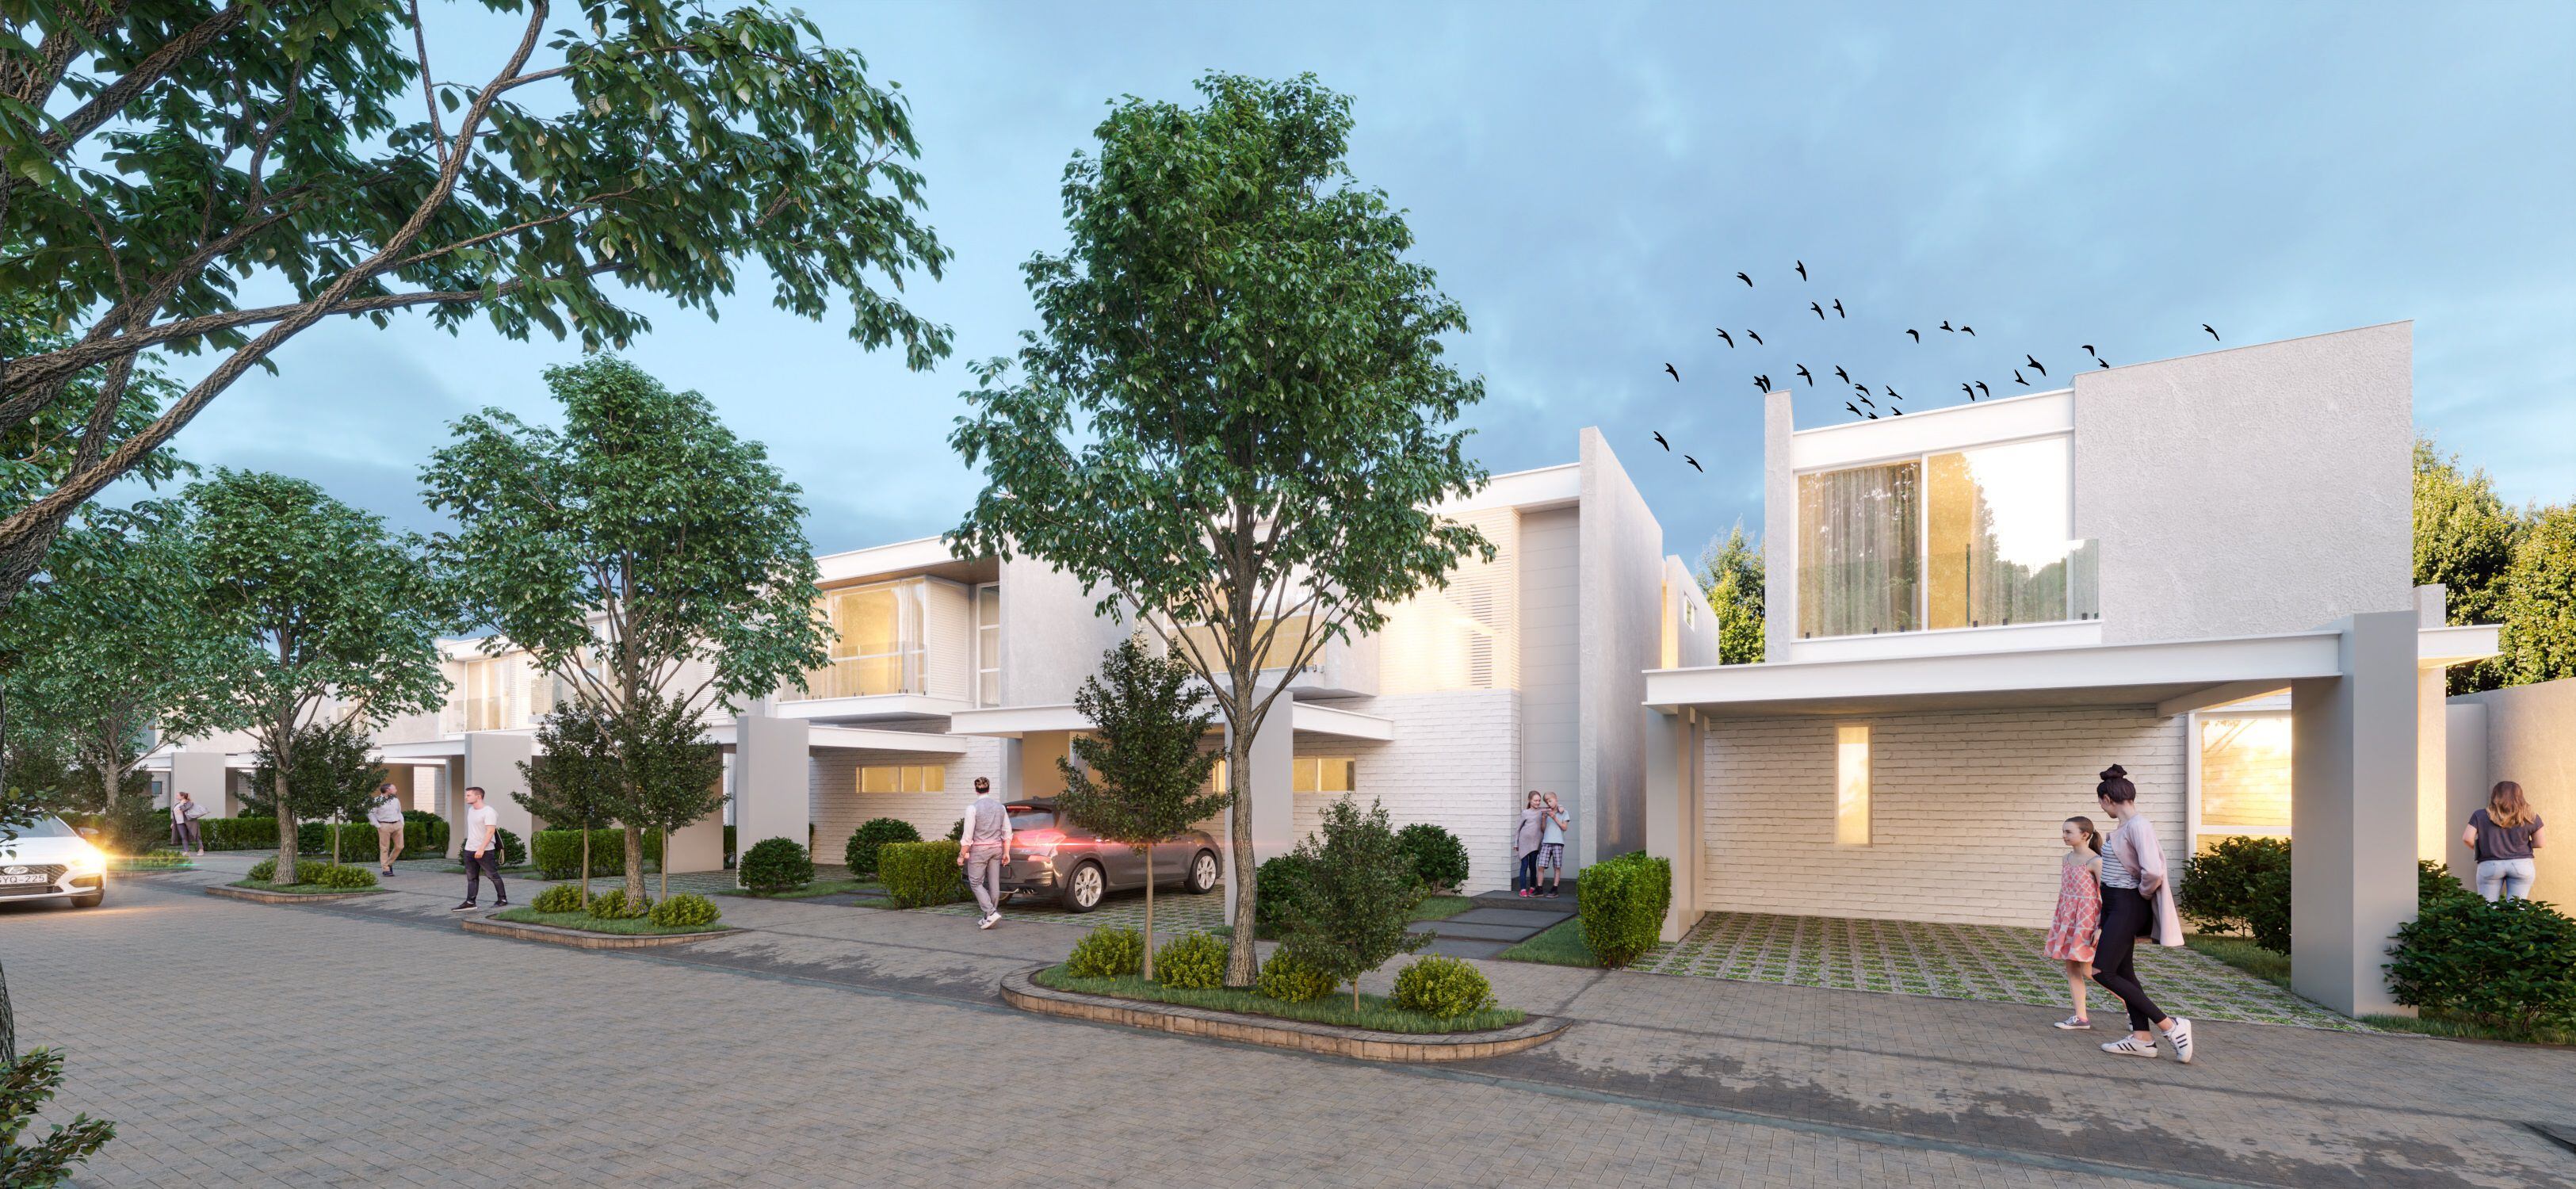 Render o imagen digital de las viviendas que se ofertan en el Nuevo Samborondón.